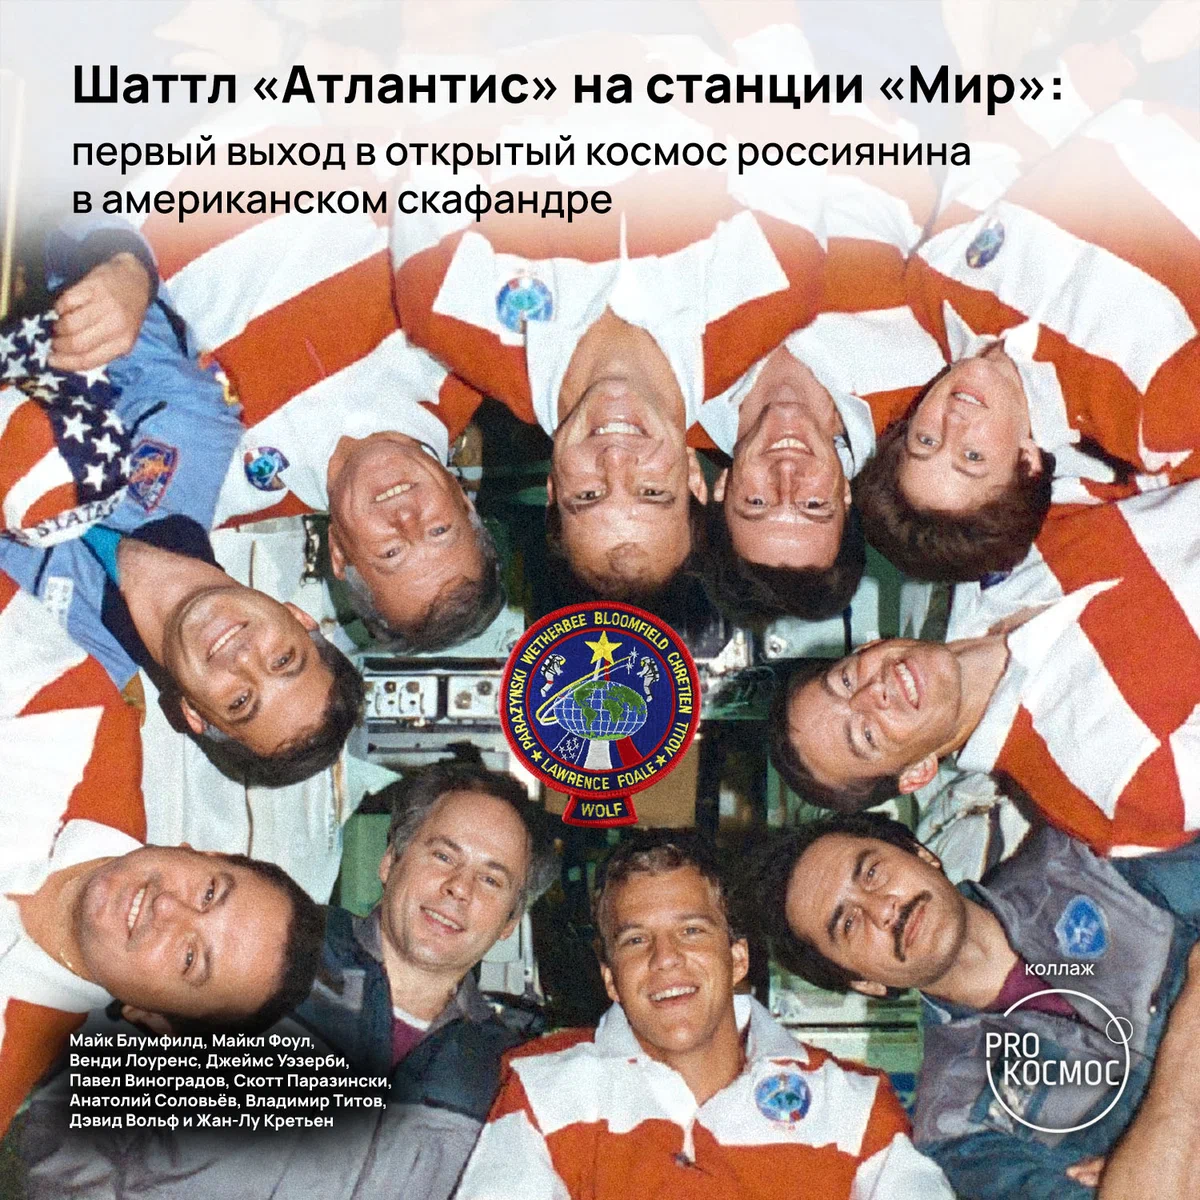 Шаттл «Атлантис» на станции «Мир»: первый выход в открытый космос россиянина в американском скафандре height=1200px width=1200px